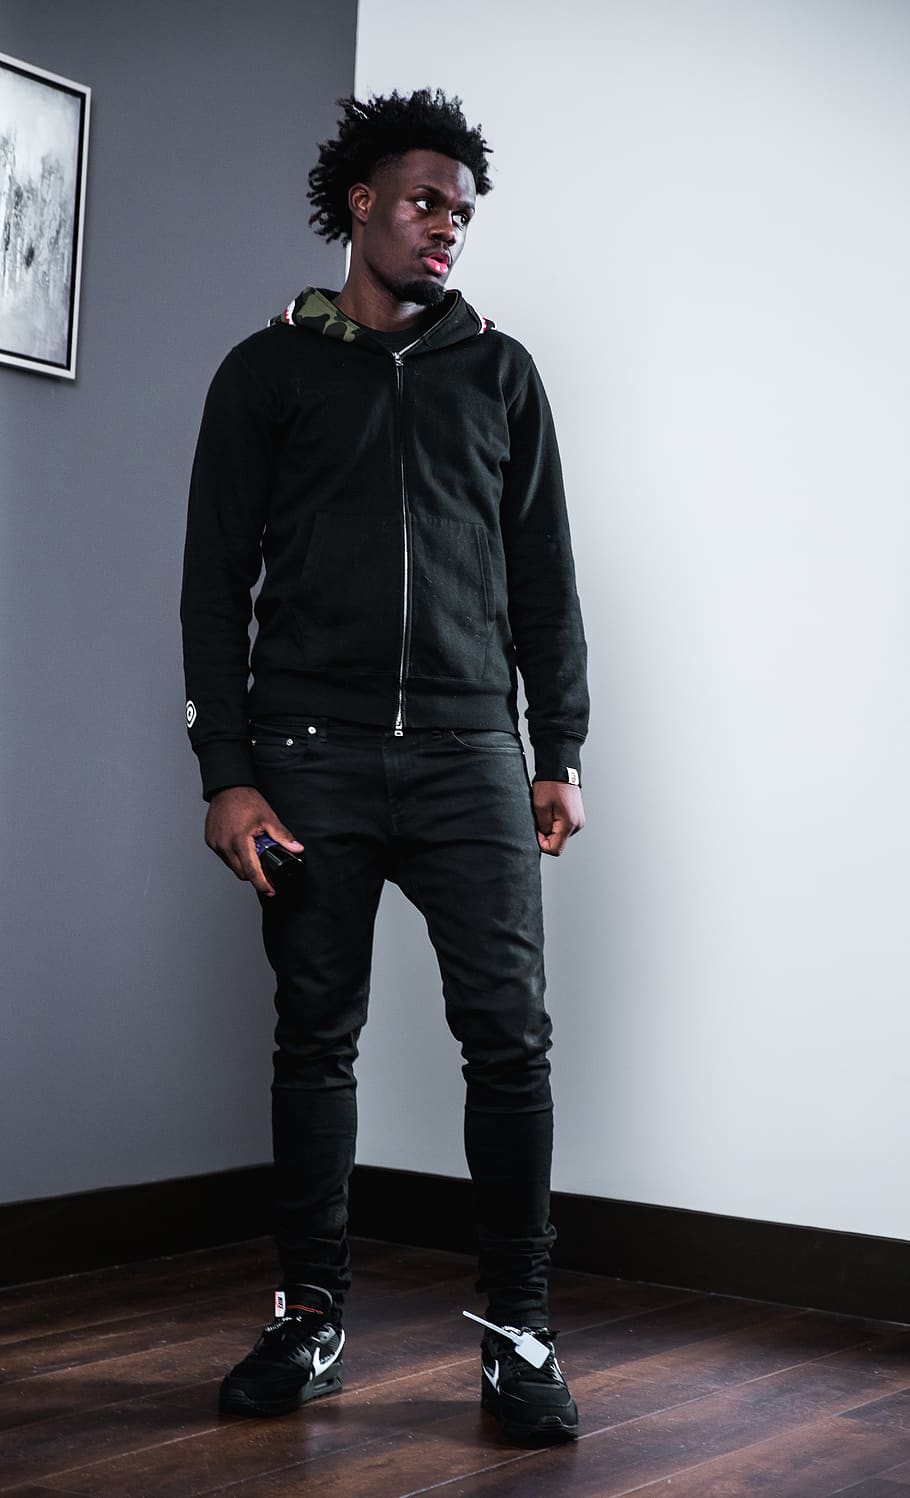 man wearing black full-zip jacket standing on wooden parquet floor, HD wallpaper